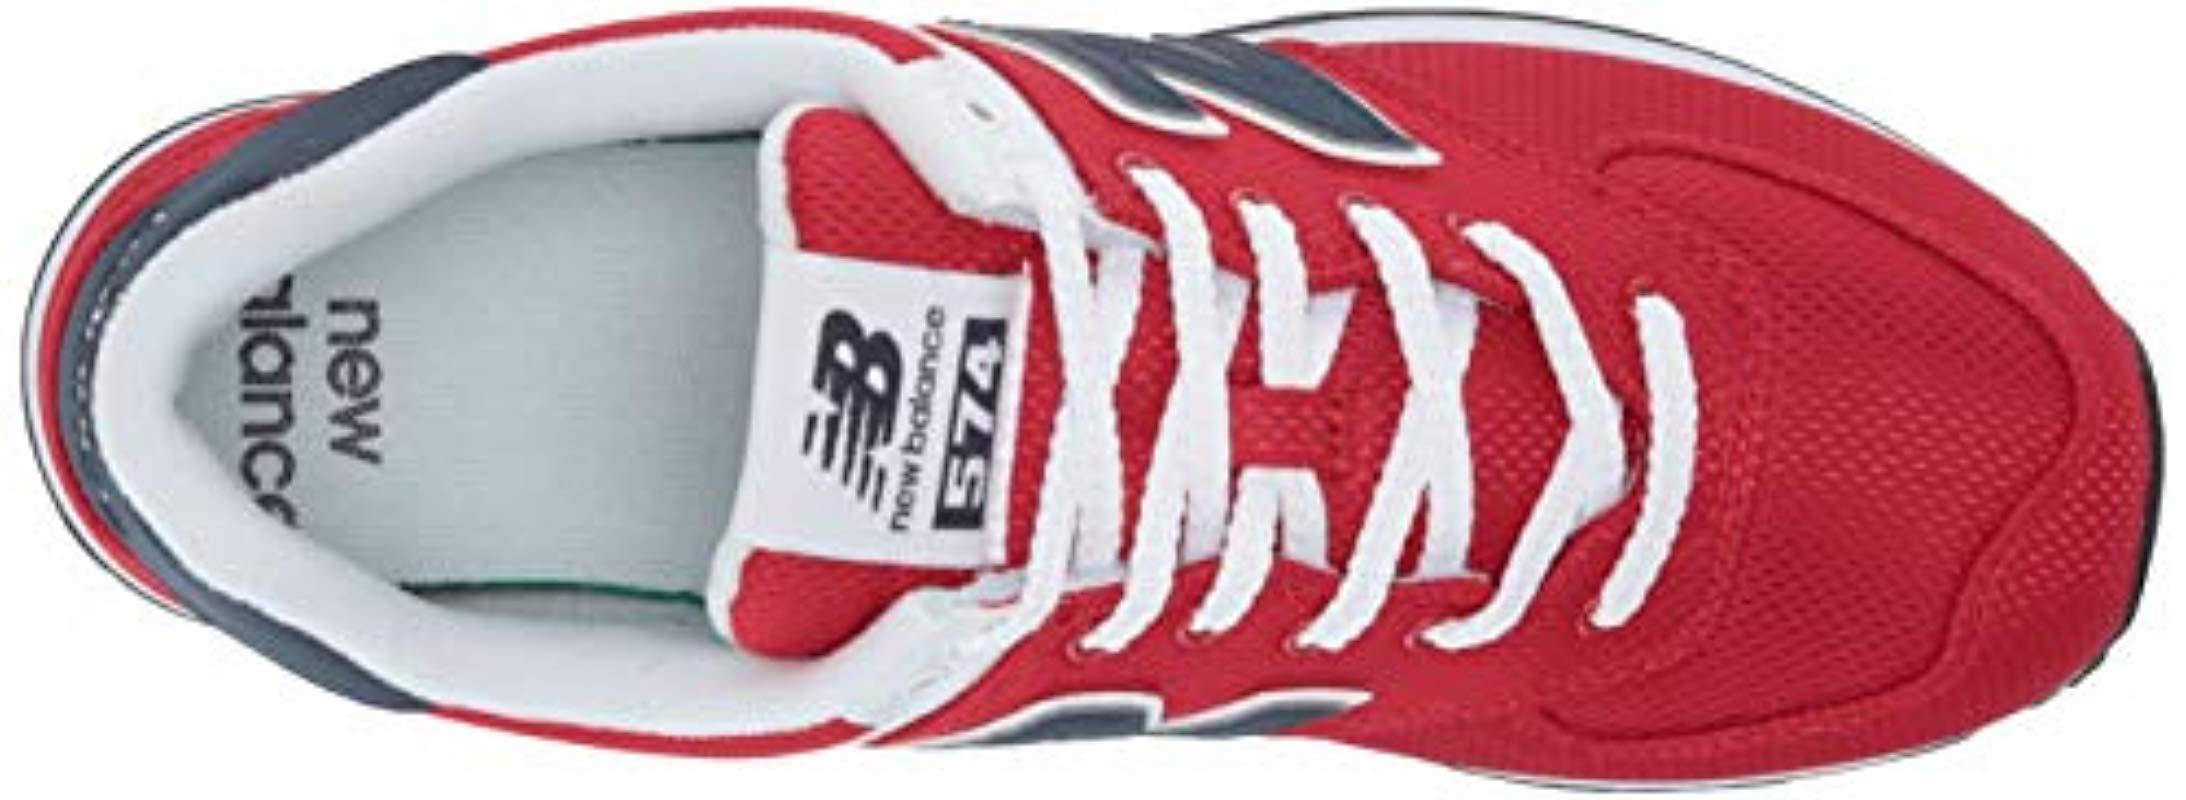 New Balance 574v2 Sneaker in Red for Men - Lyst